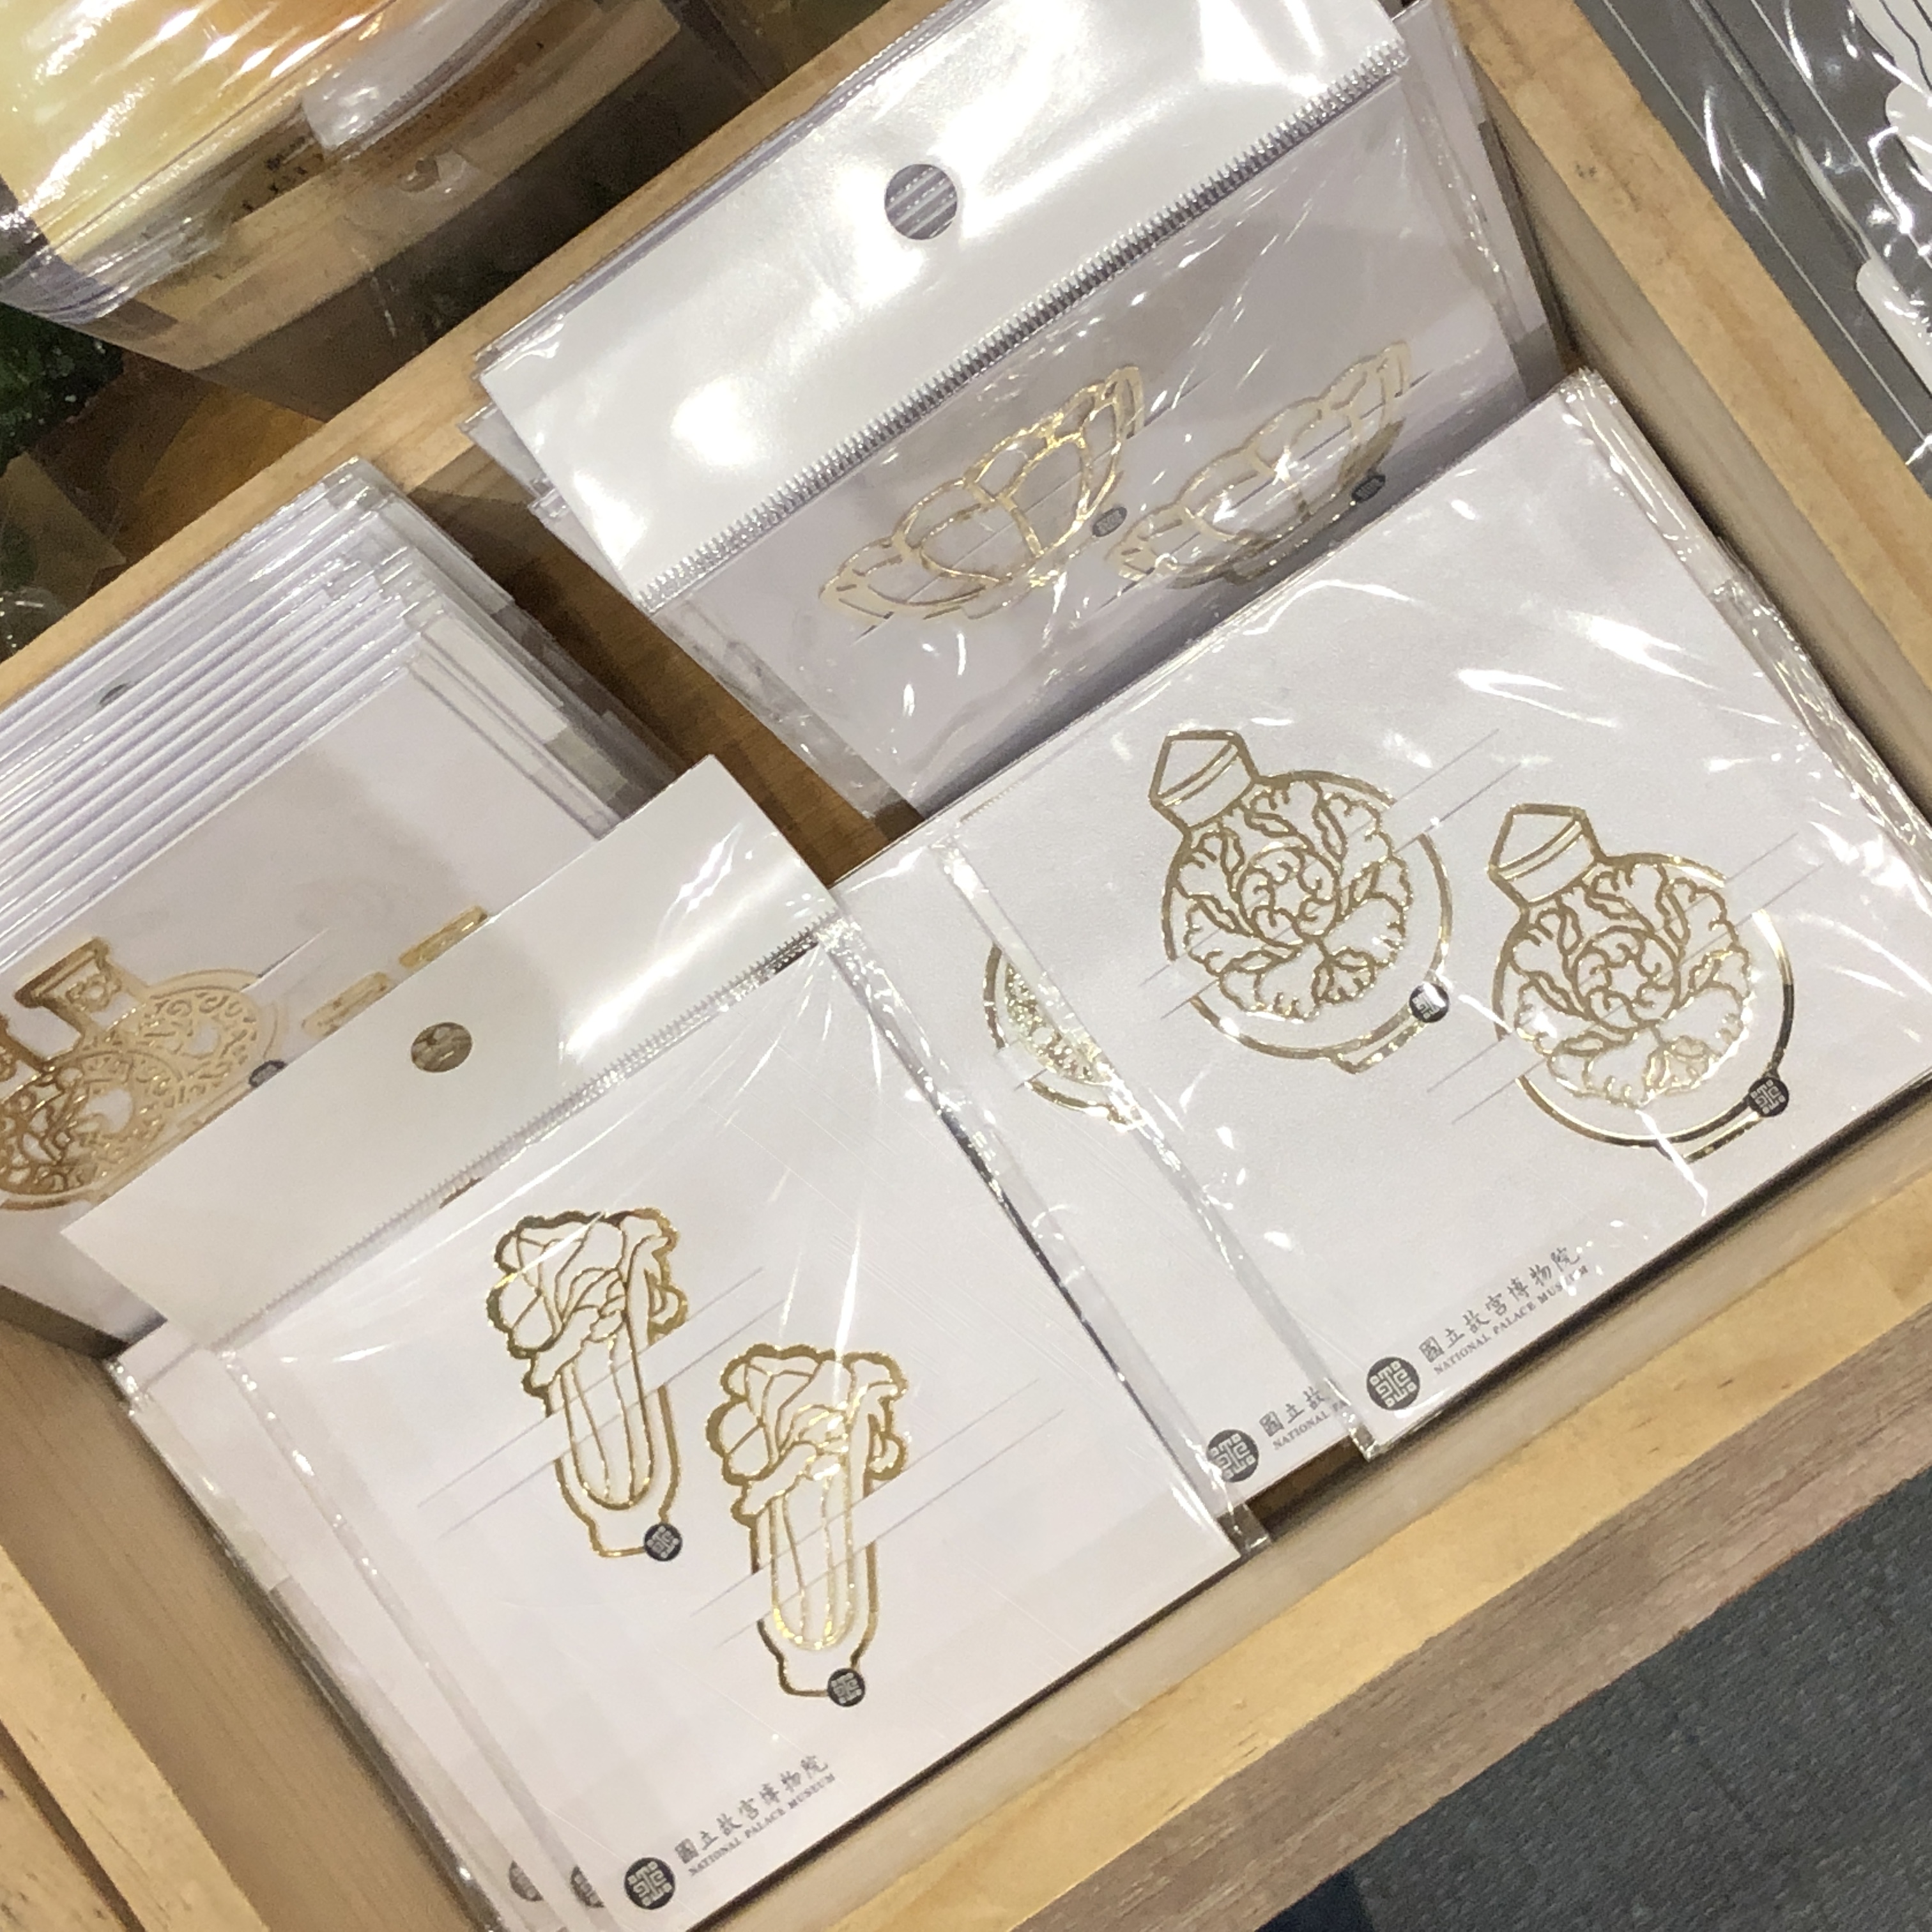 옥배추와 소장 작품 형태로 제작한 책갈피